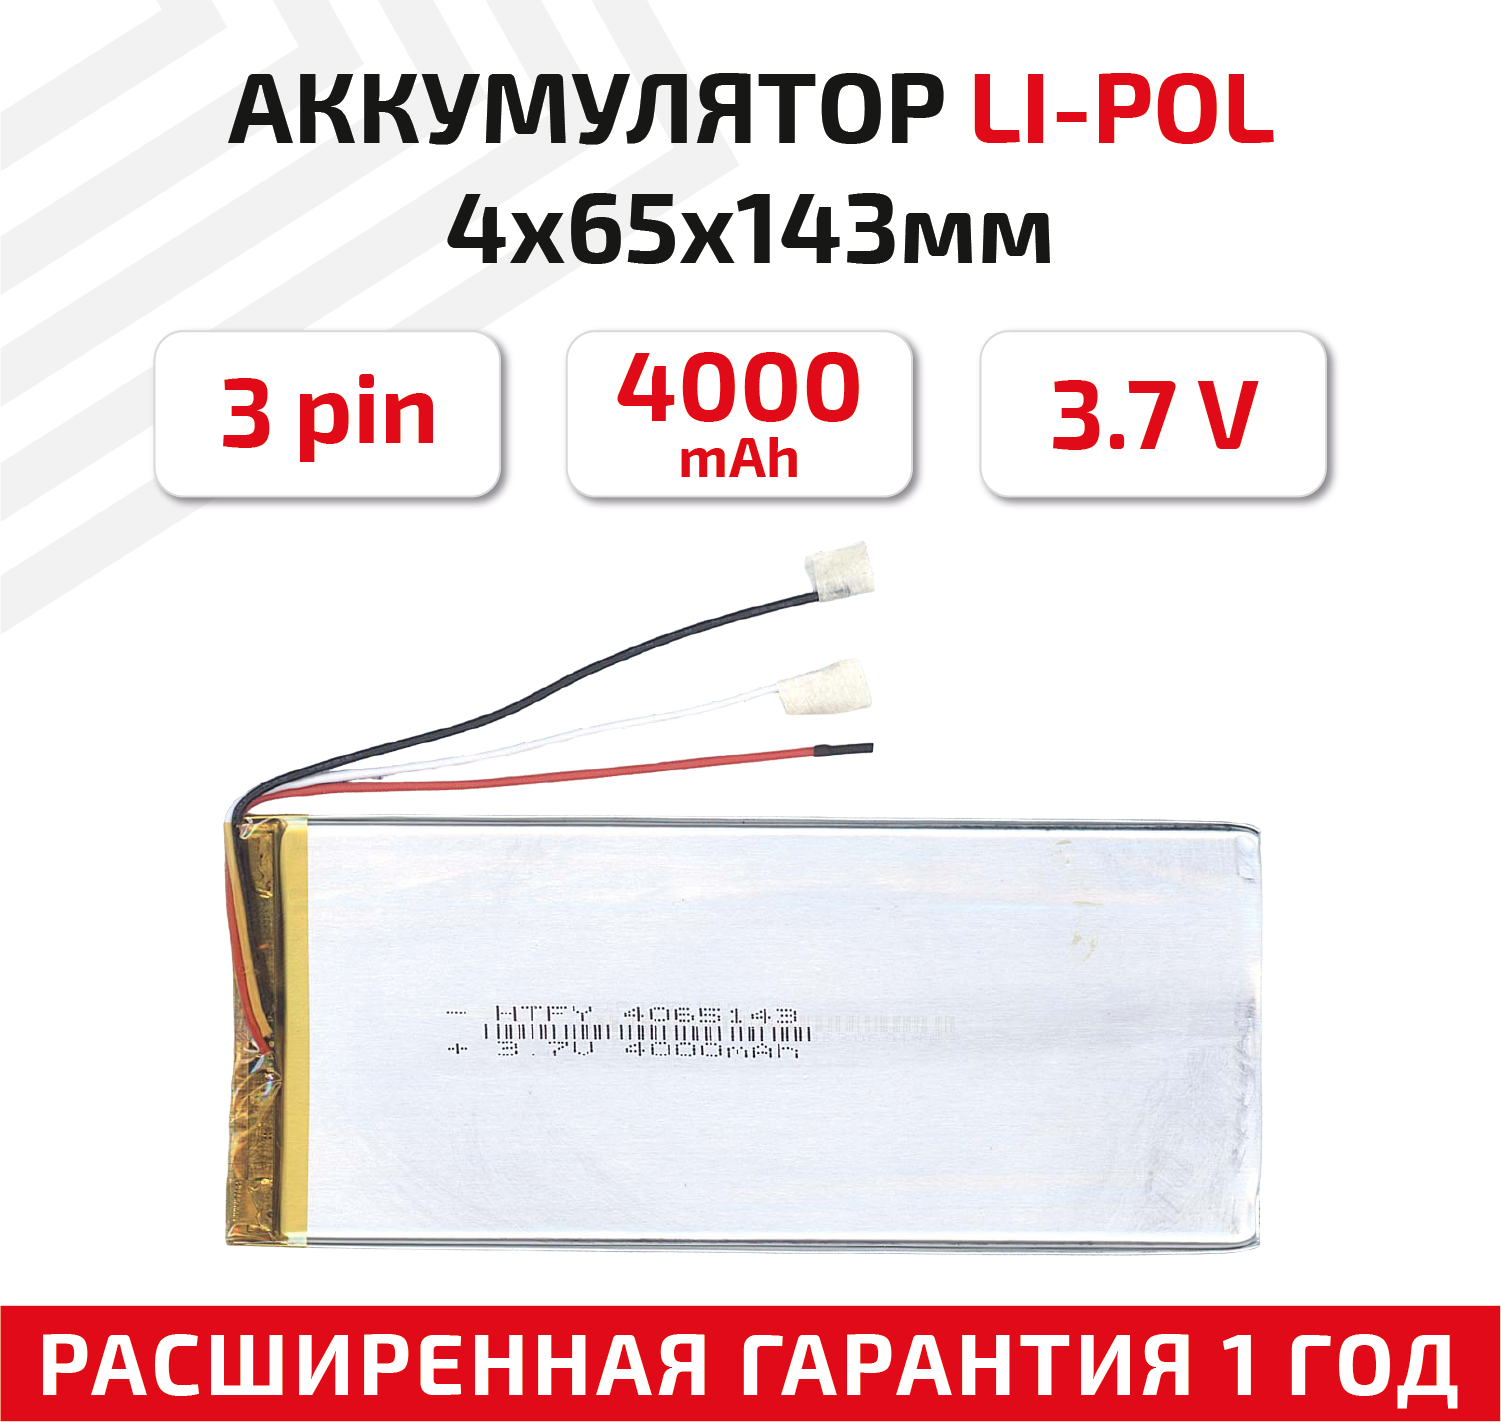 Универсальный аккумулятор (АКБ) для планшета, видеорегистратора и др, 4х65х143мм, 4000мАч, 3.7В, Li-Pol, 3-pin (на 3 провода)